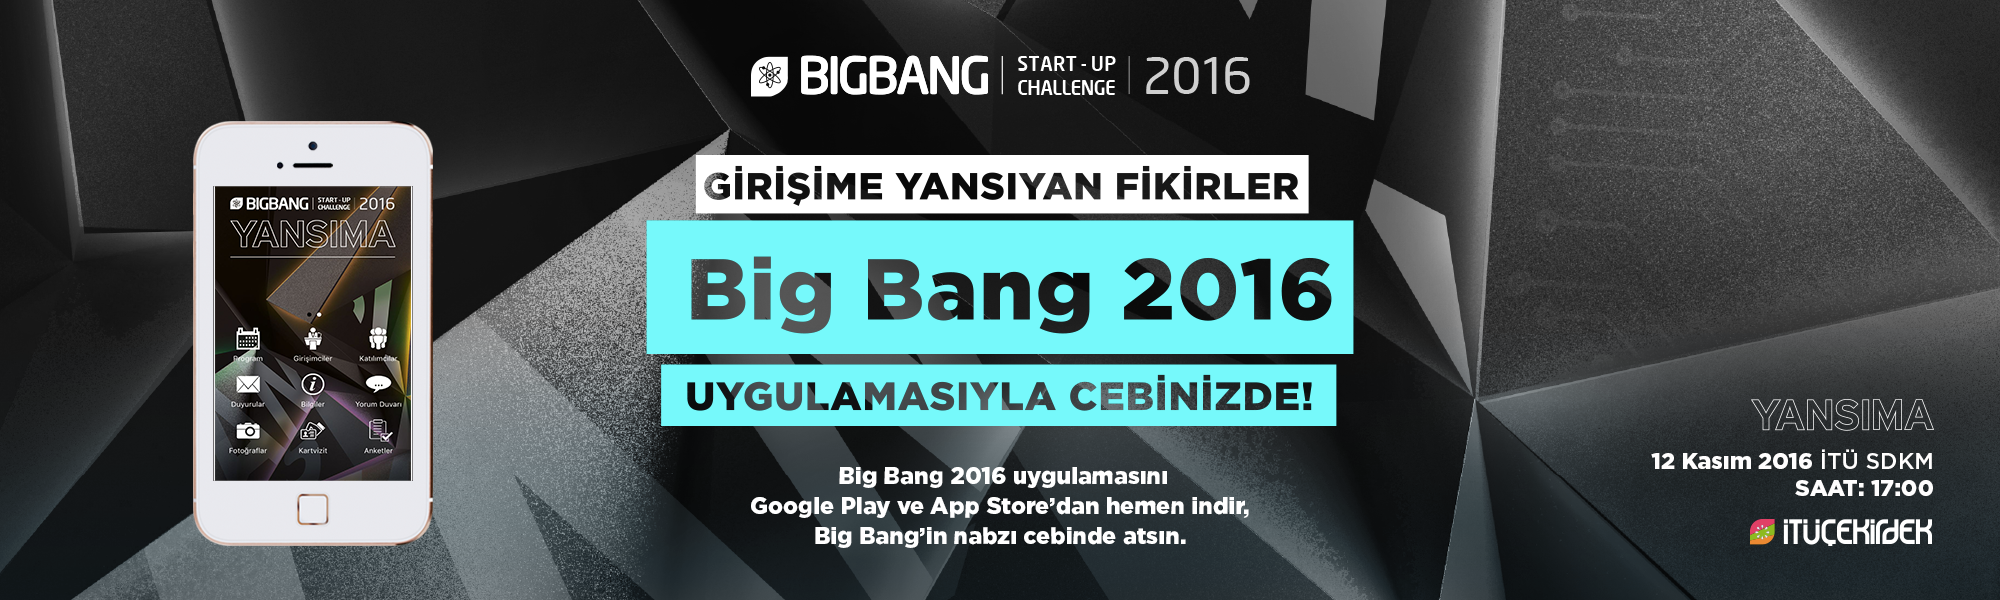 big bang 2016 mobi̇l uygulamasi çikti! 6